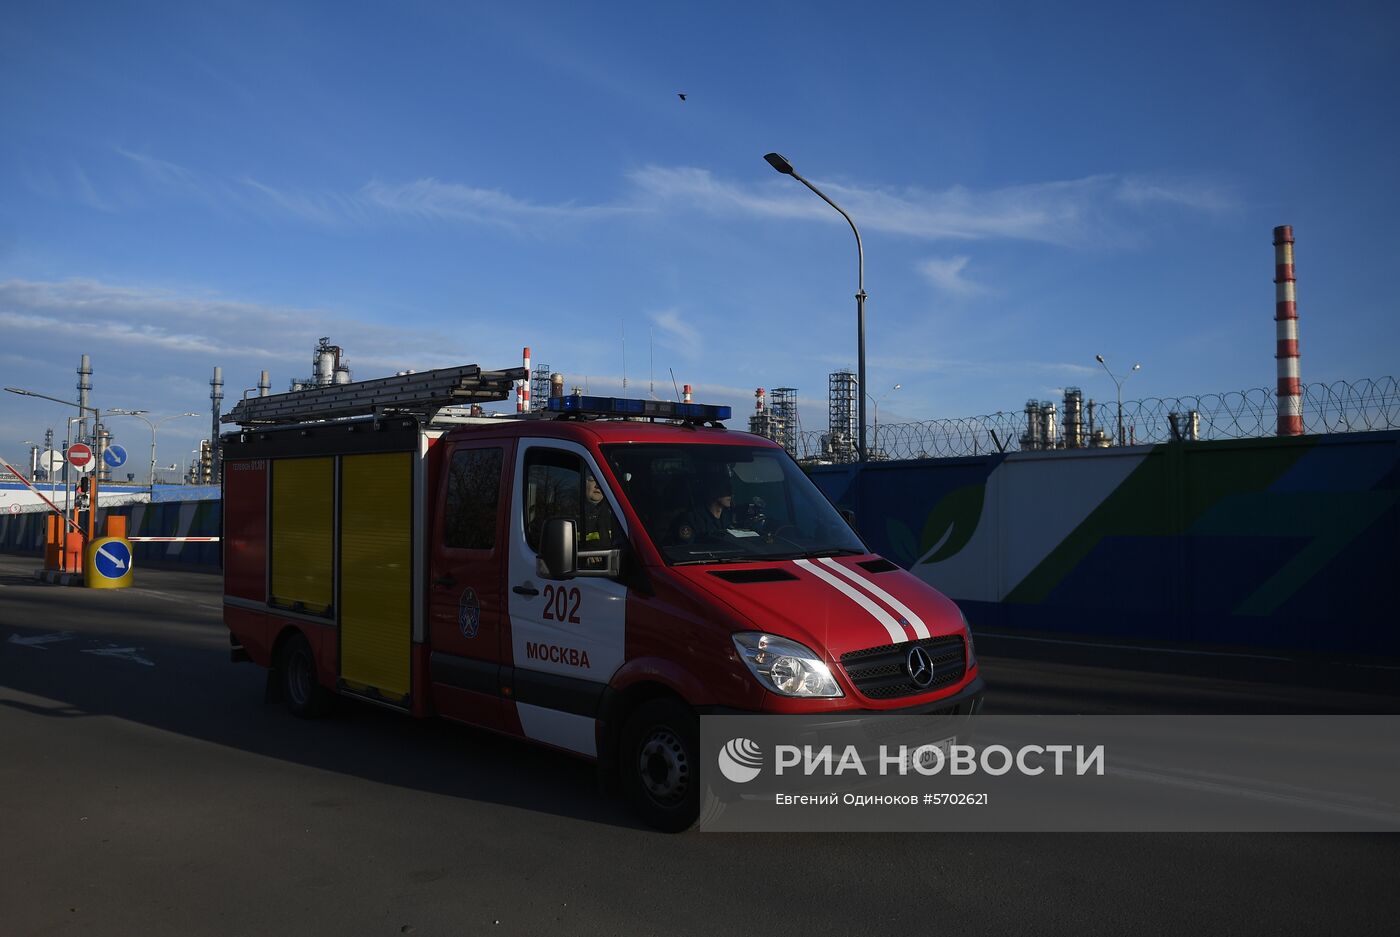 Пожар на Московском нефтеперерабатывающем заводе